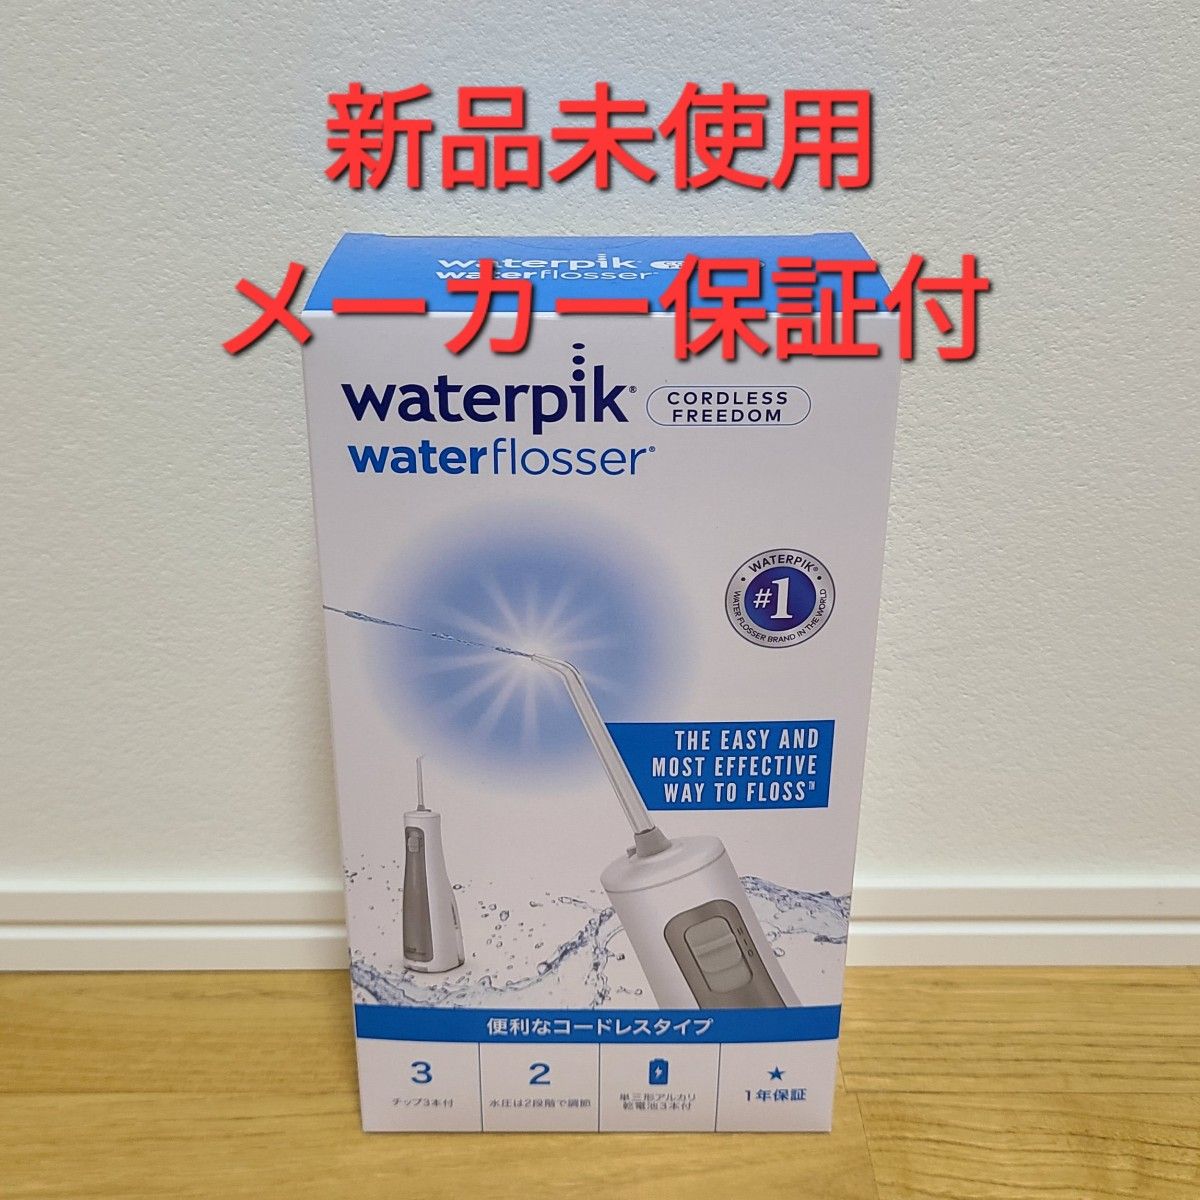 新品未開封 ウォーターピック コードレスフリーダム  waterpik WF-03J010 ヤーマン 口腔洗浄器